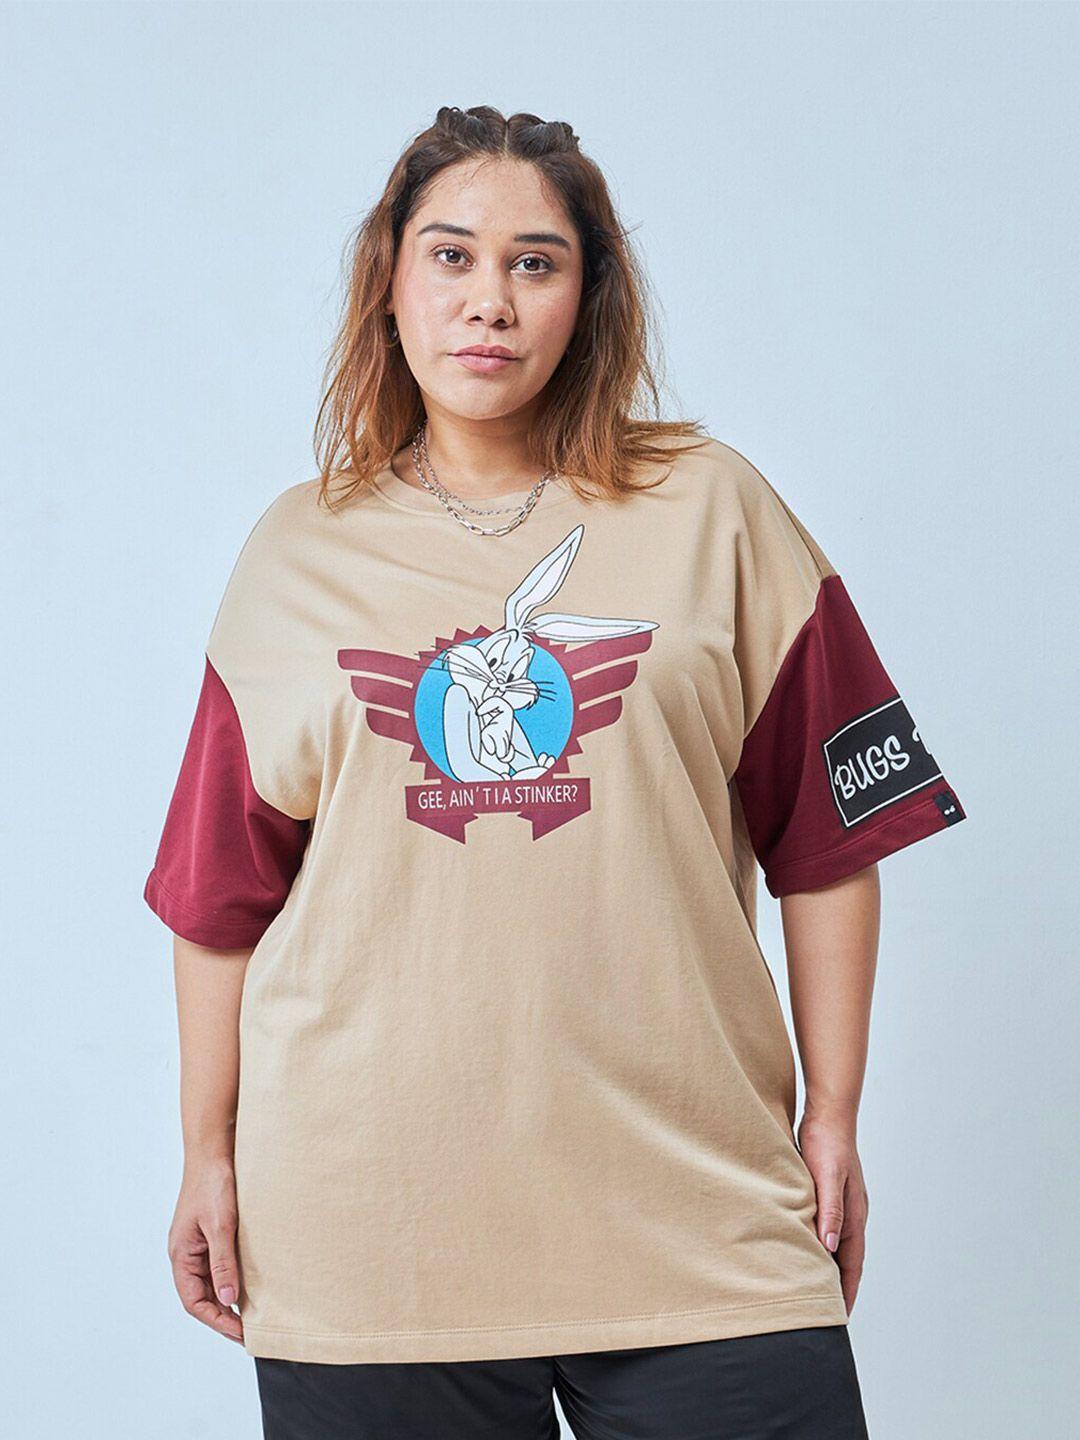 bewakoof plus women brown printed t-shirt